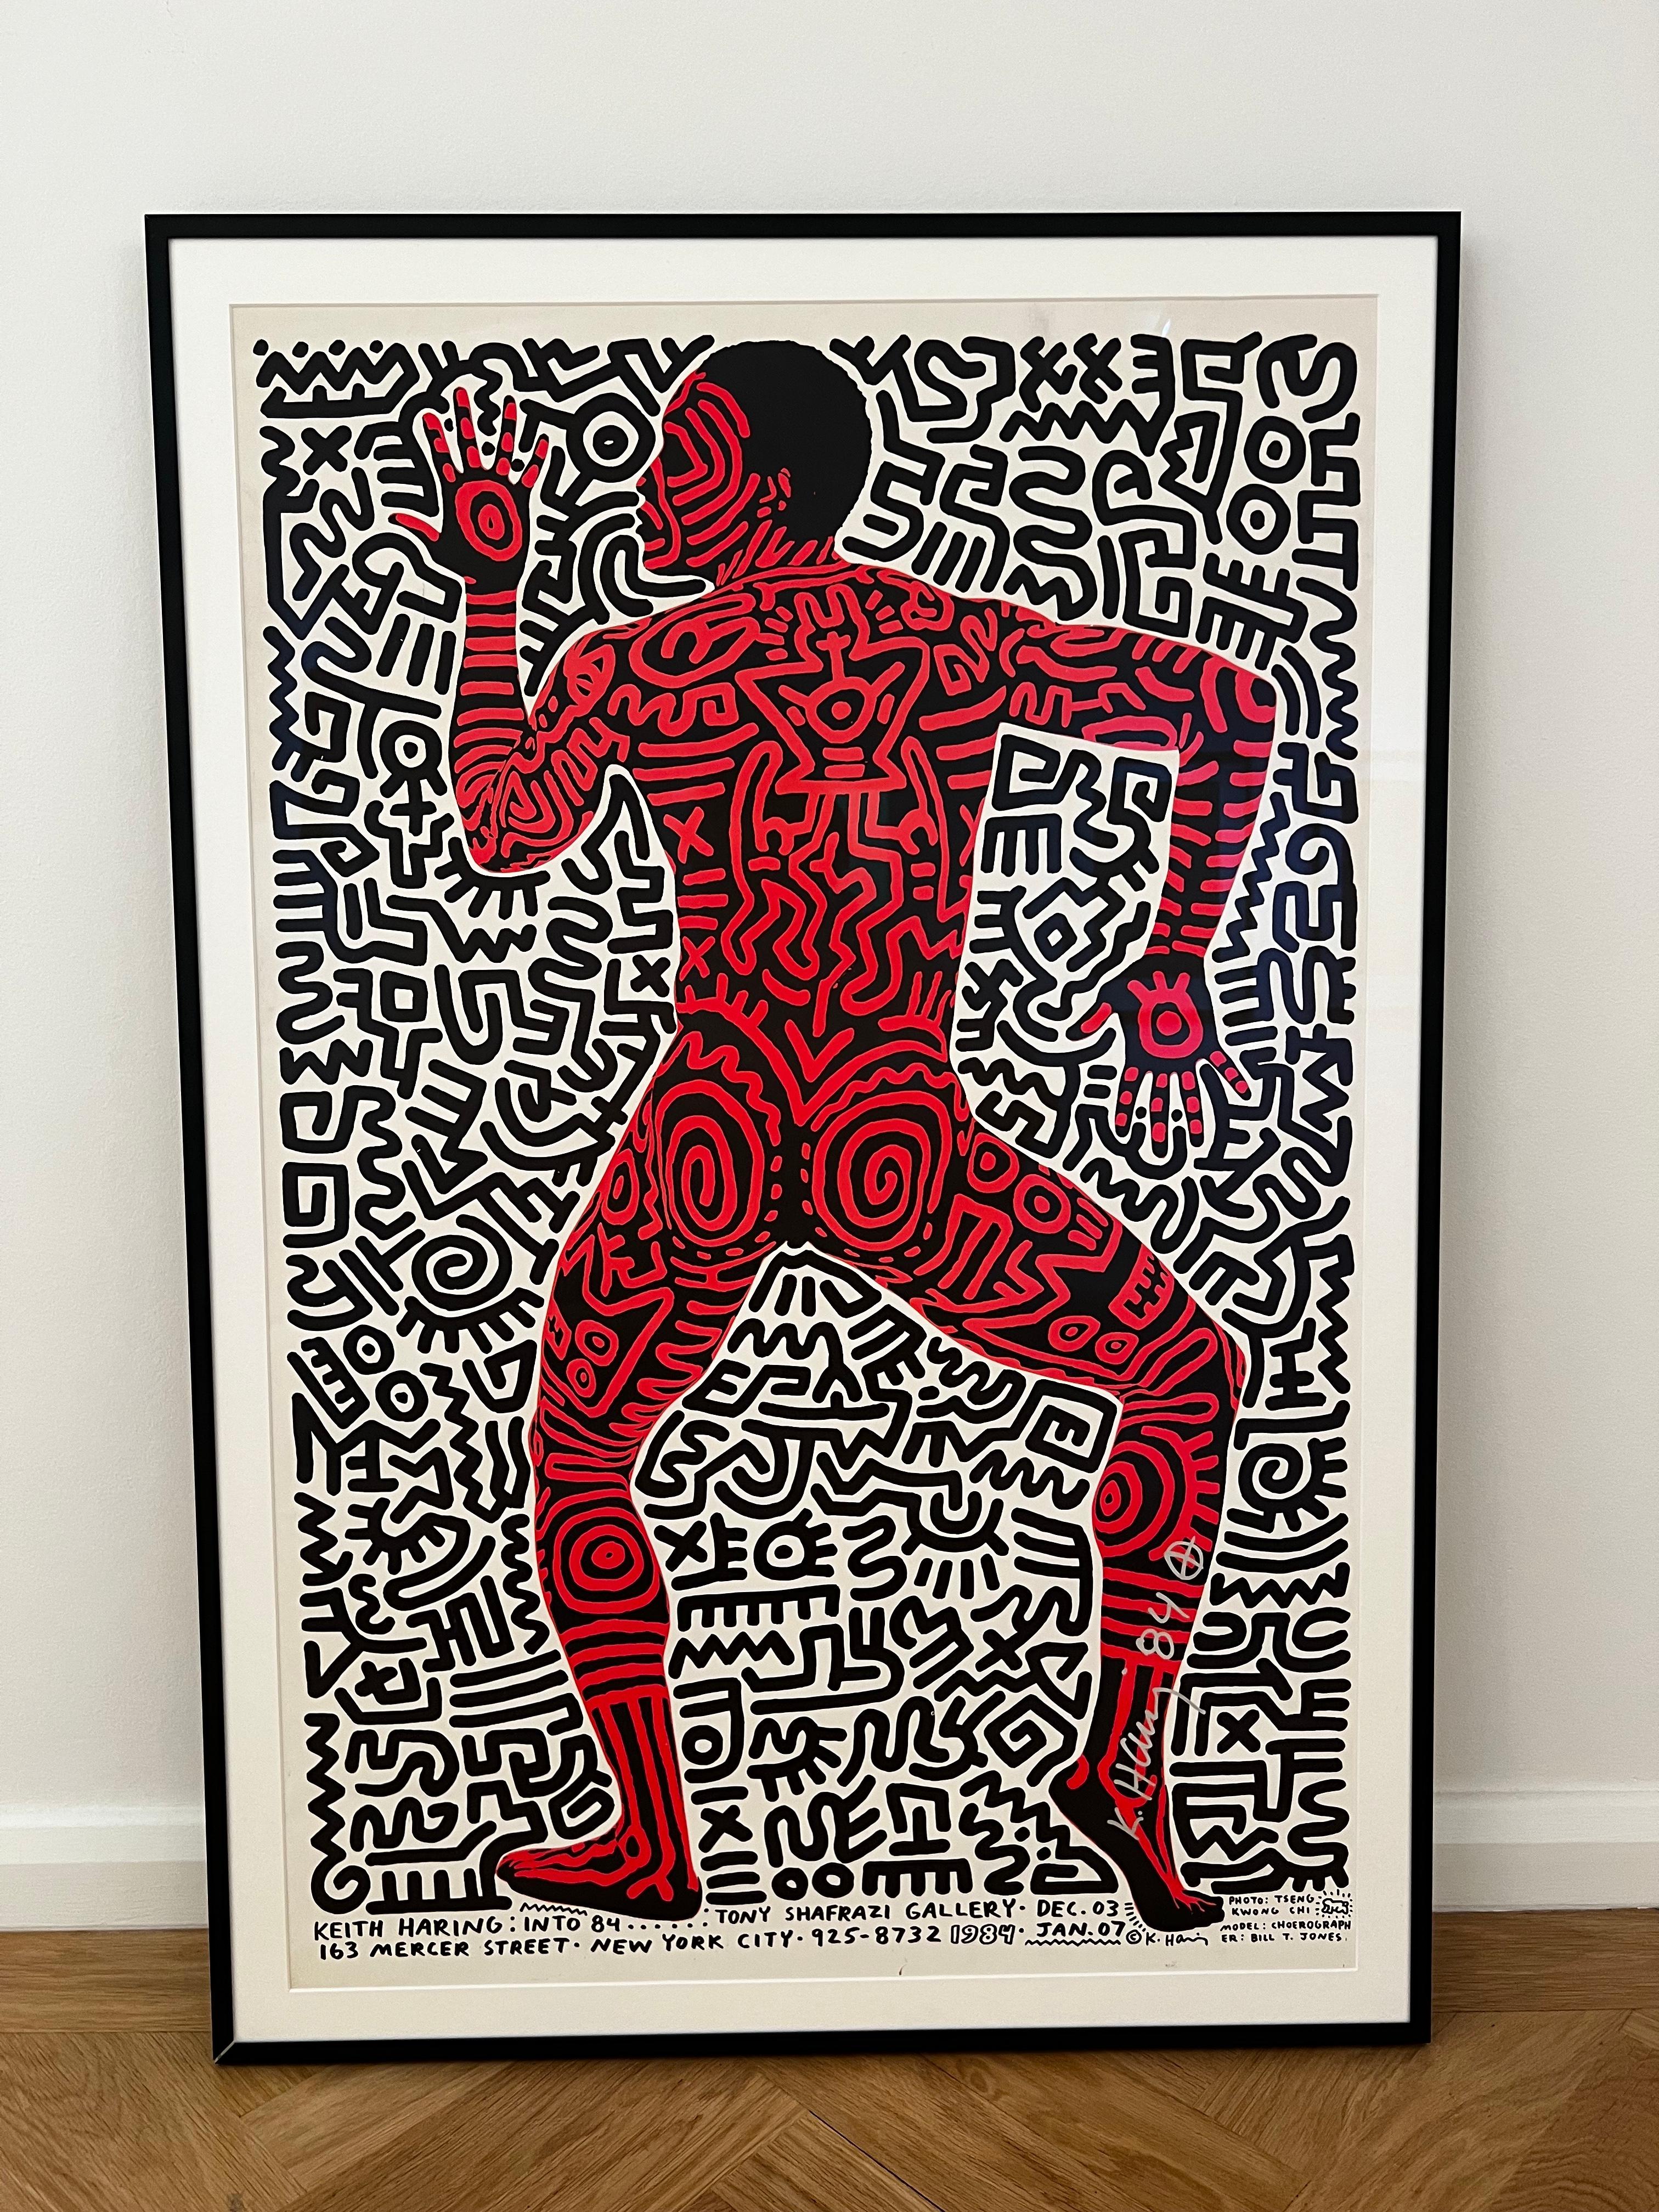 Into 84 - Impression de Keith Haring, signature rare 4